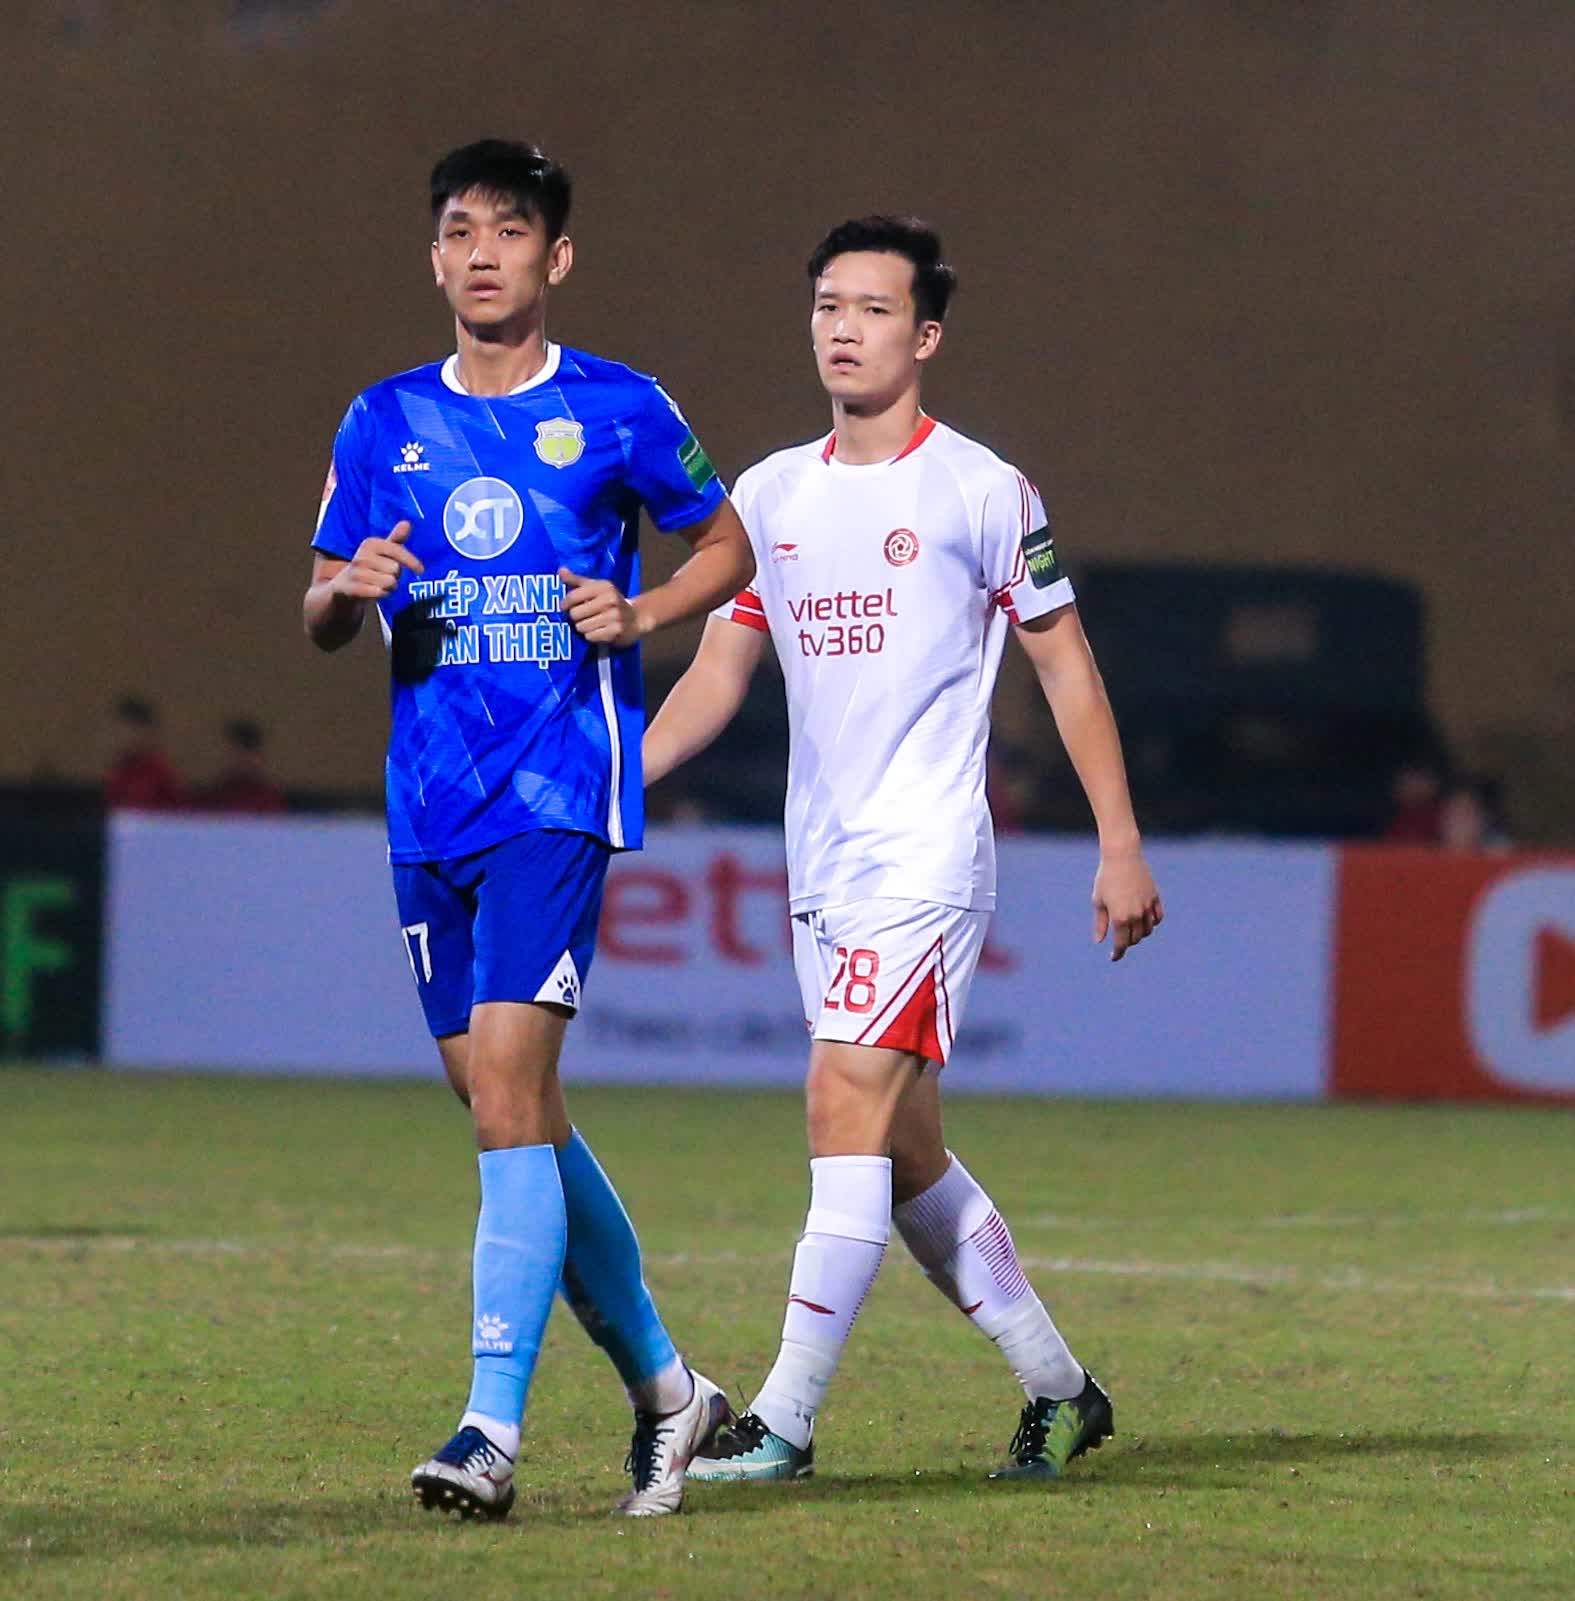 Thủ môn Phạm Văn Phong liên tiếp cản phá bóng, cứu thua cho CLB Viettel - Ảnh 9.